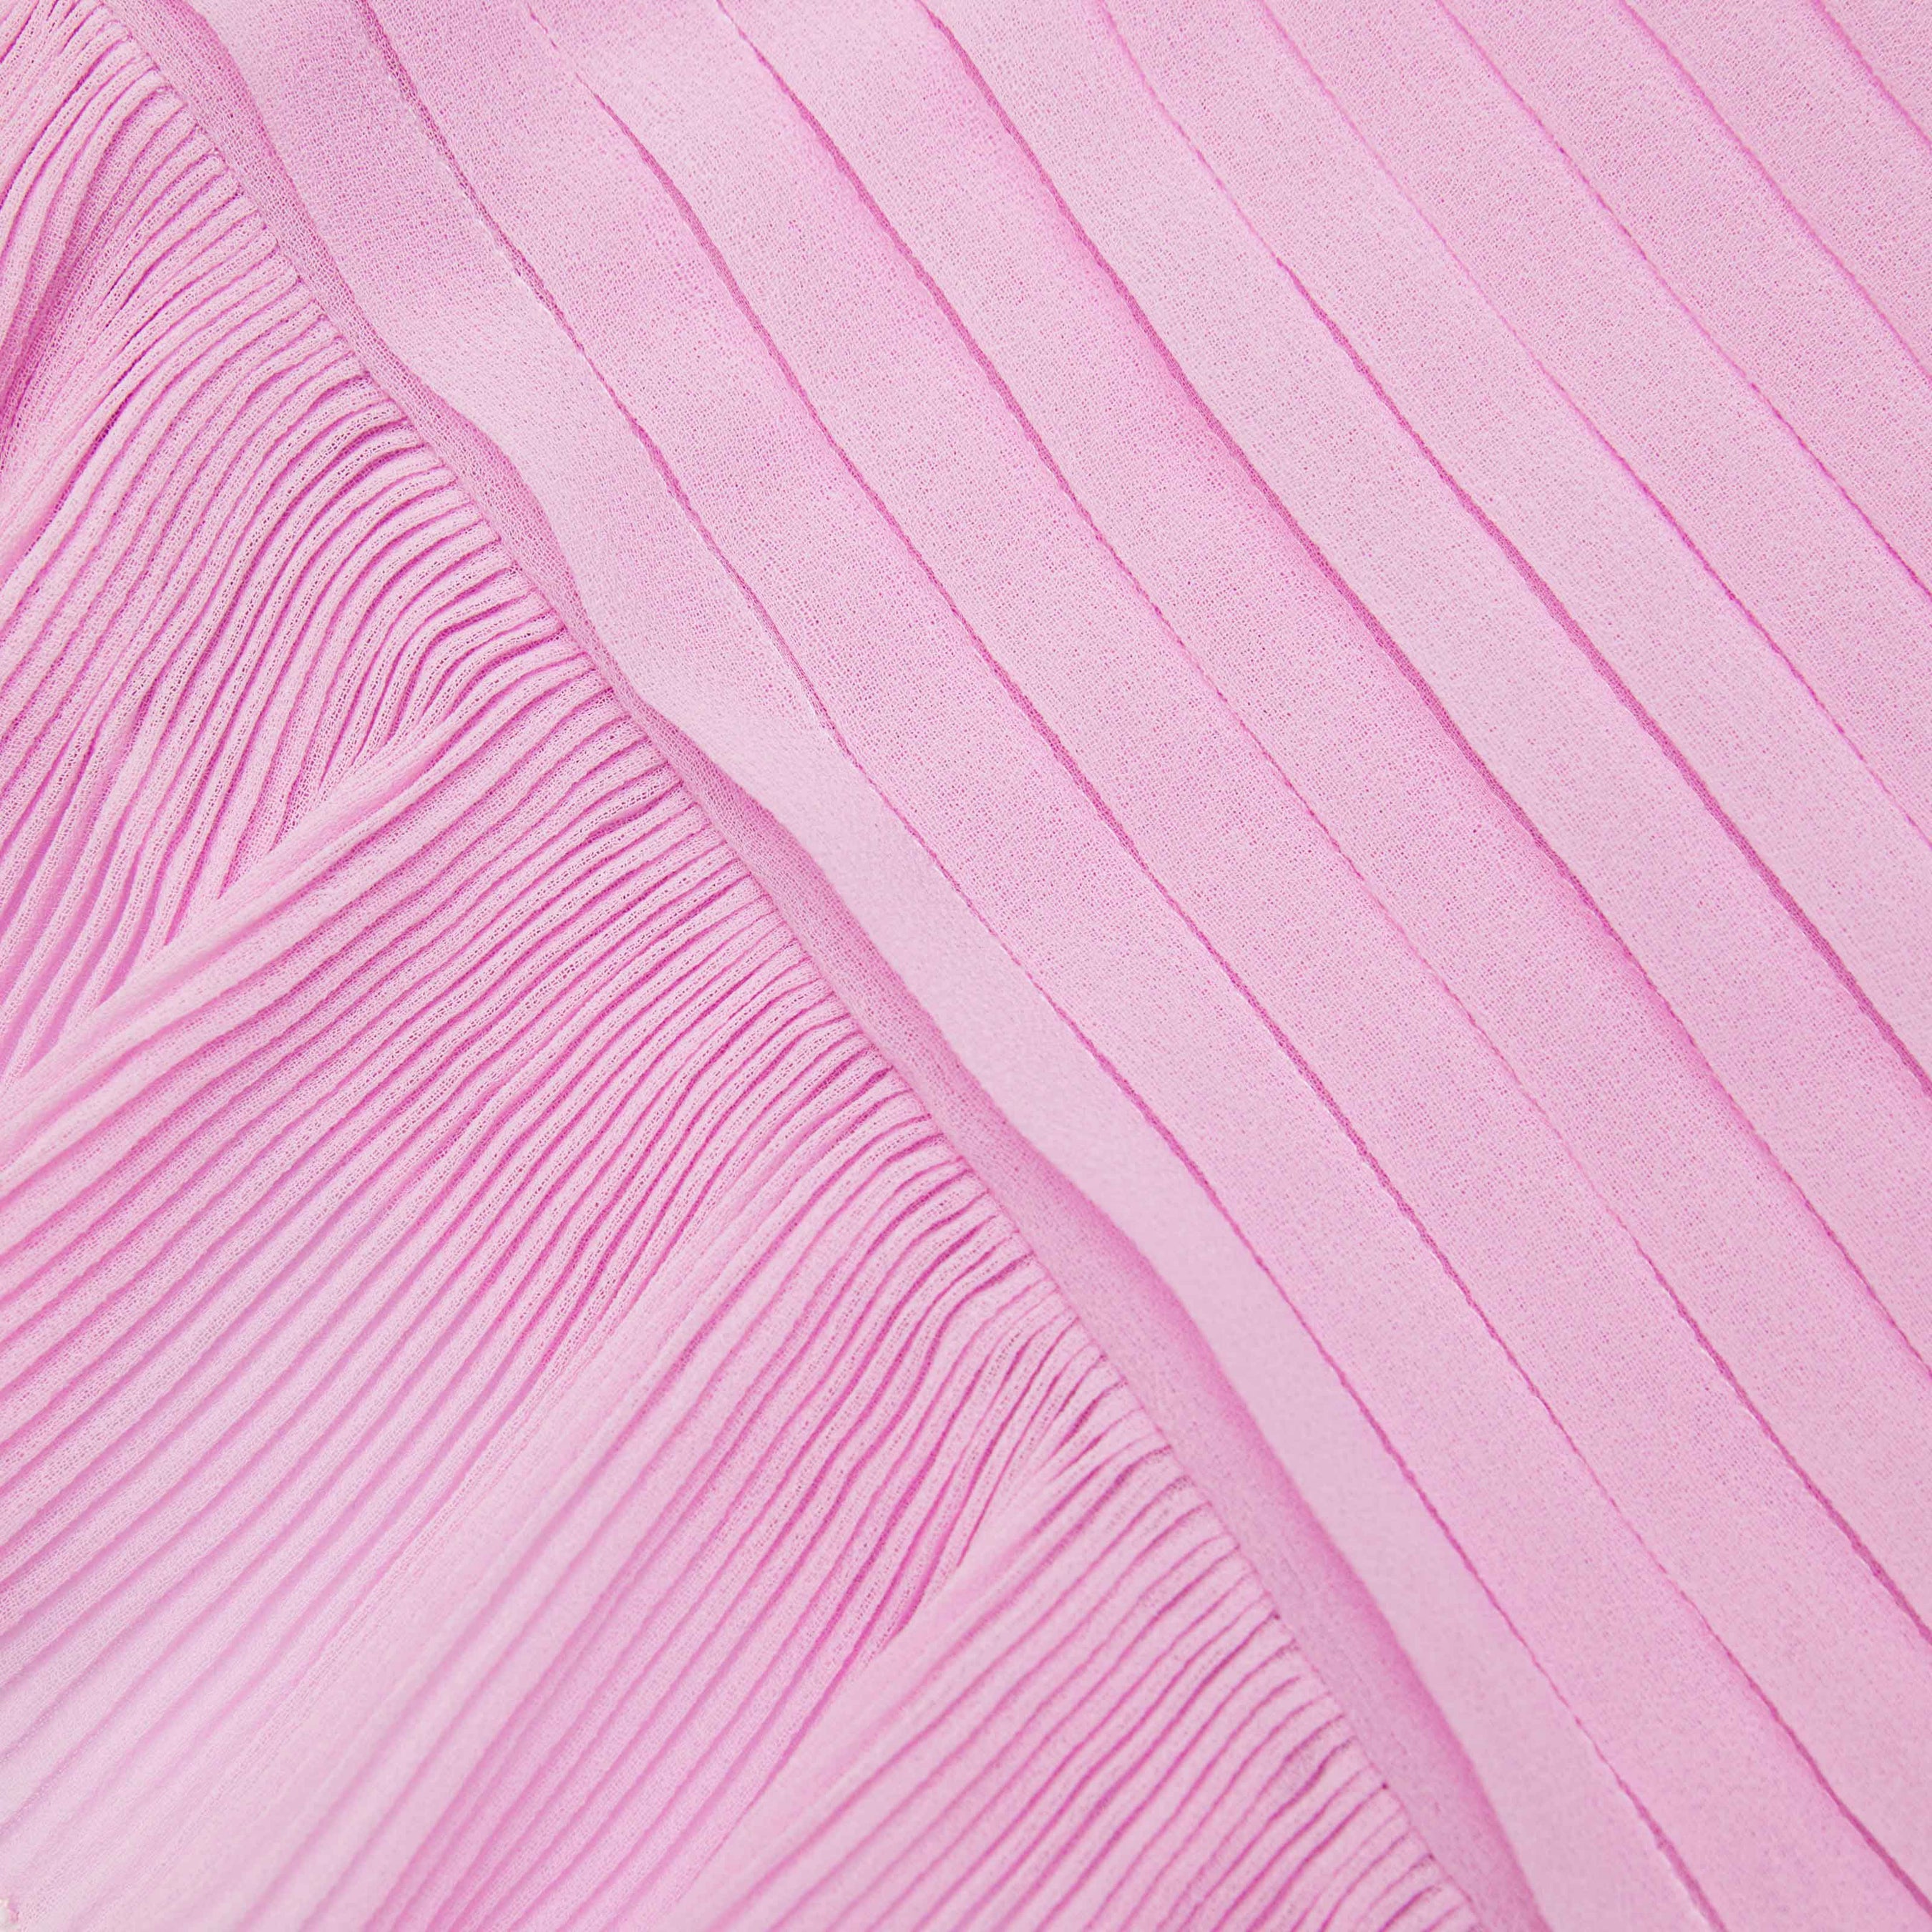 Pink Chiffon Tunic Midi Dress